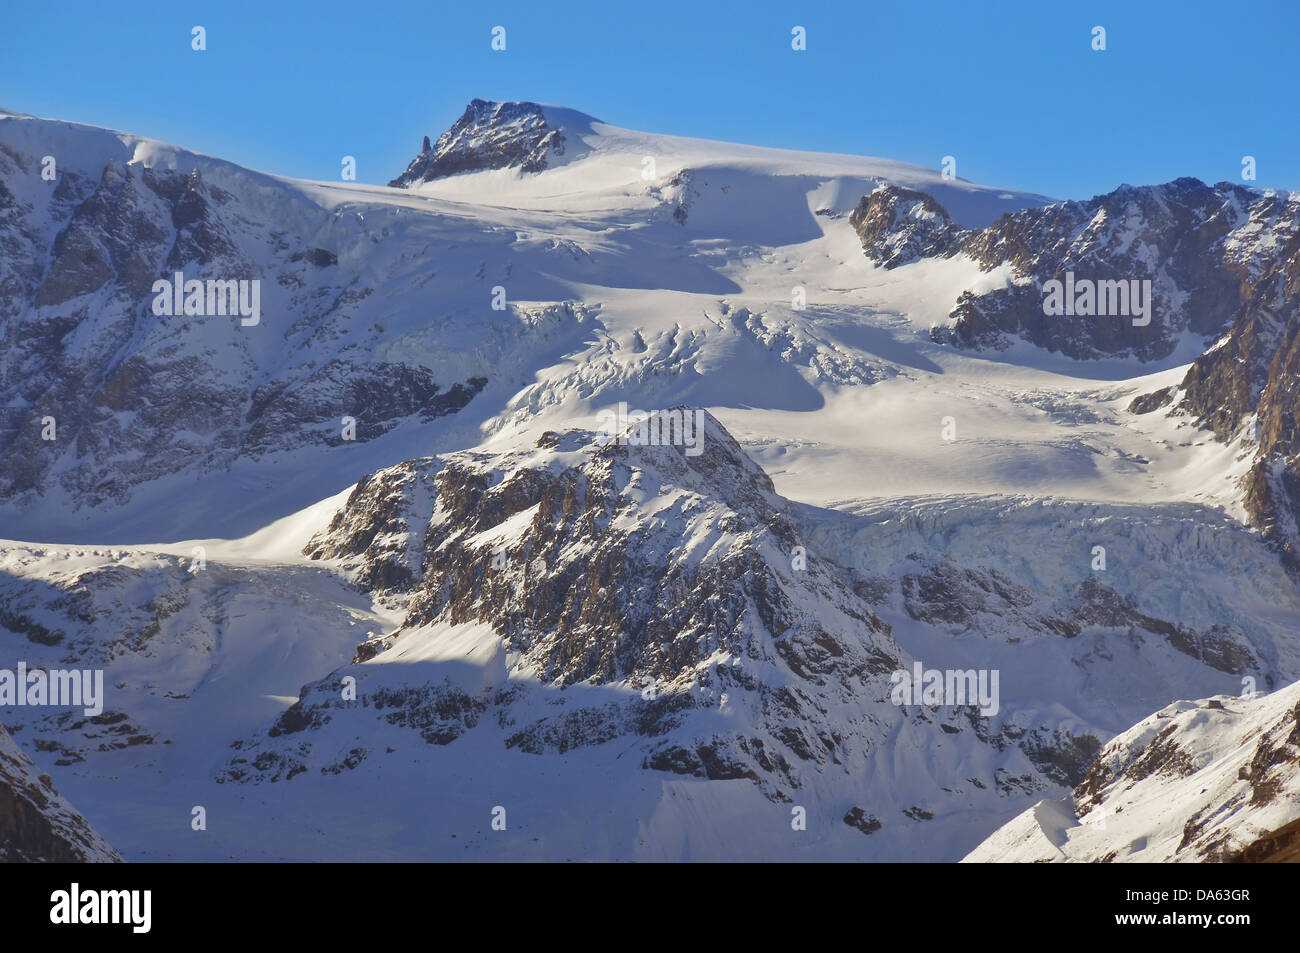 La tete blanche dans les alpes suisses du sud, un sommet historique sur la célèbre Haute Route de Chamonix à Zermatt Banque D'Images